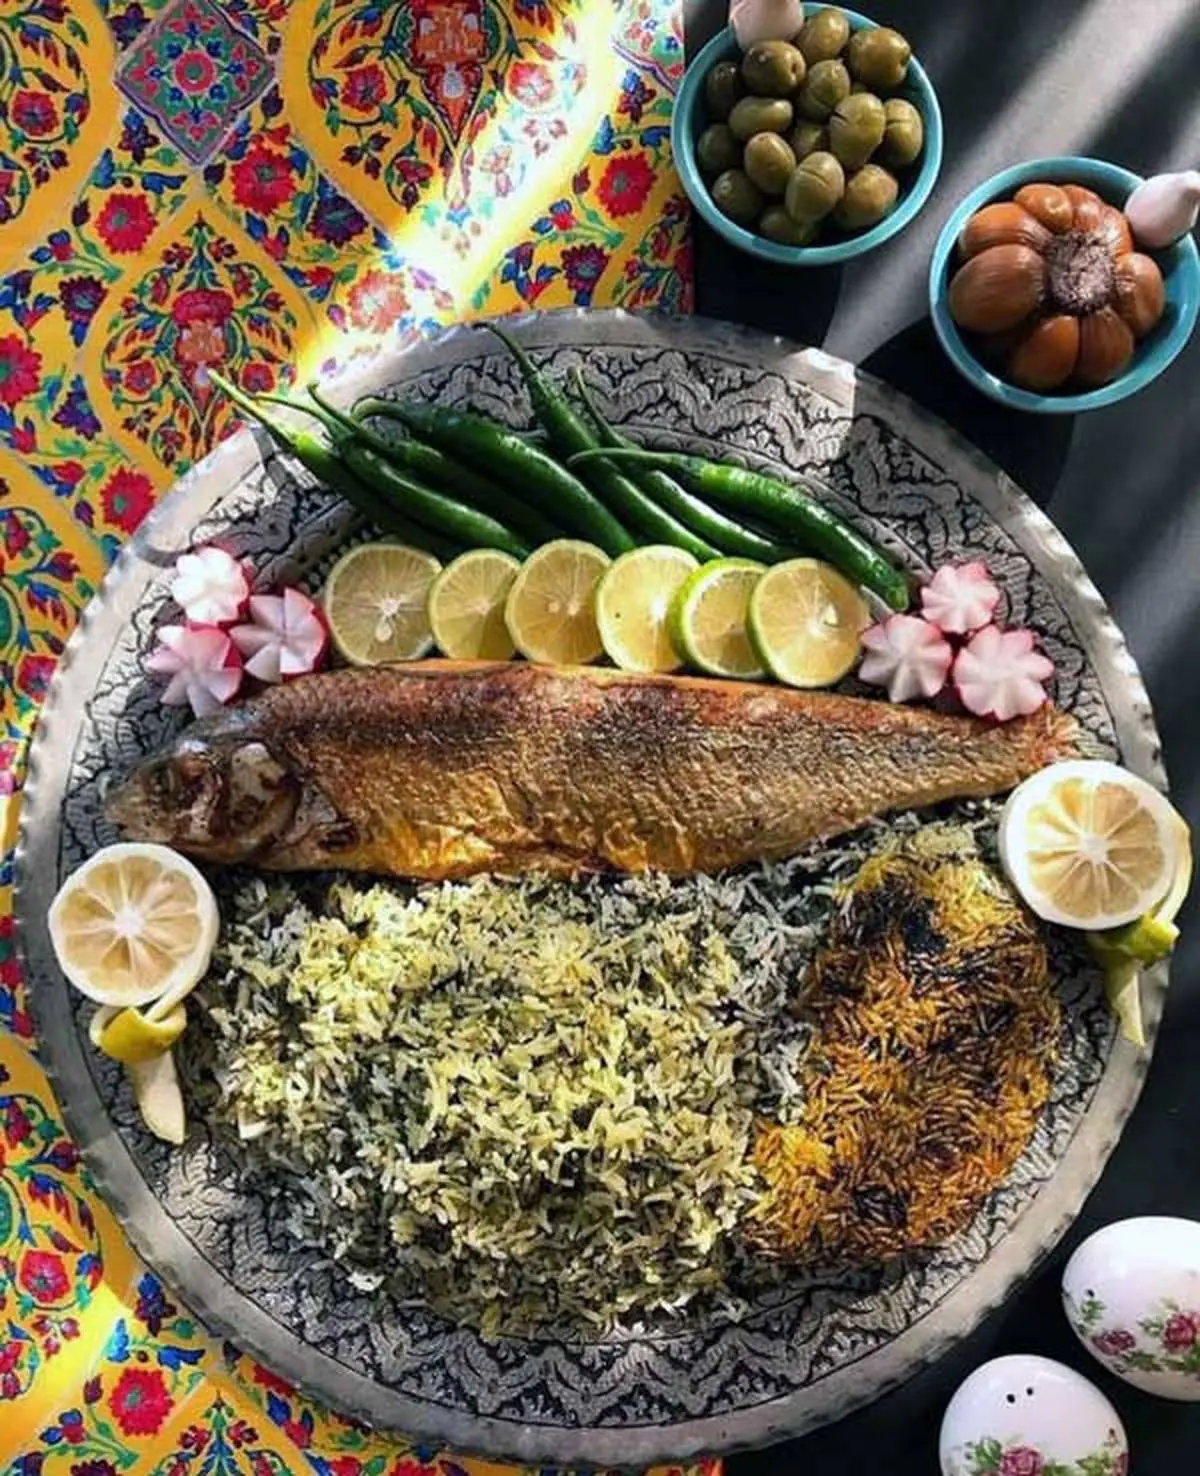 طرز تهیه “سبزی پلو با ماهی” شب عید اصیل ایرانی 